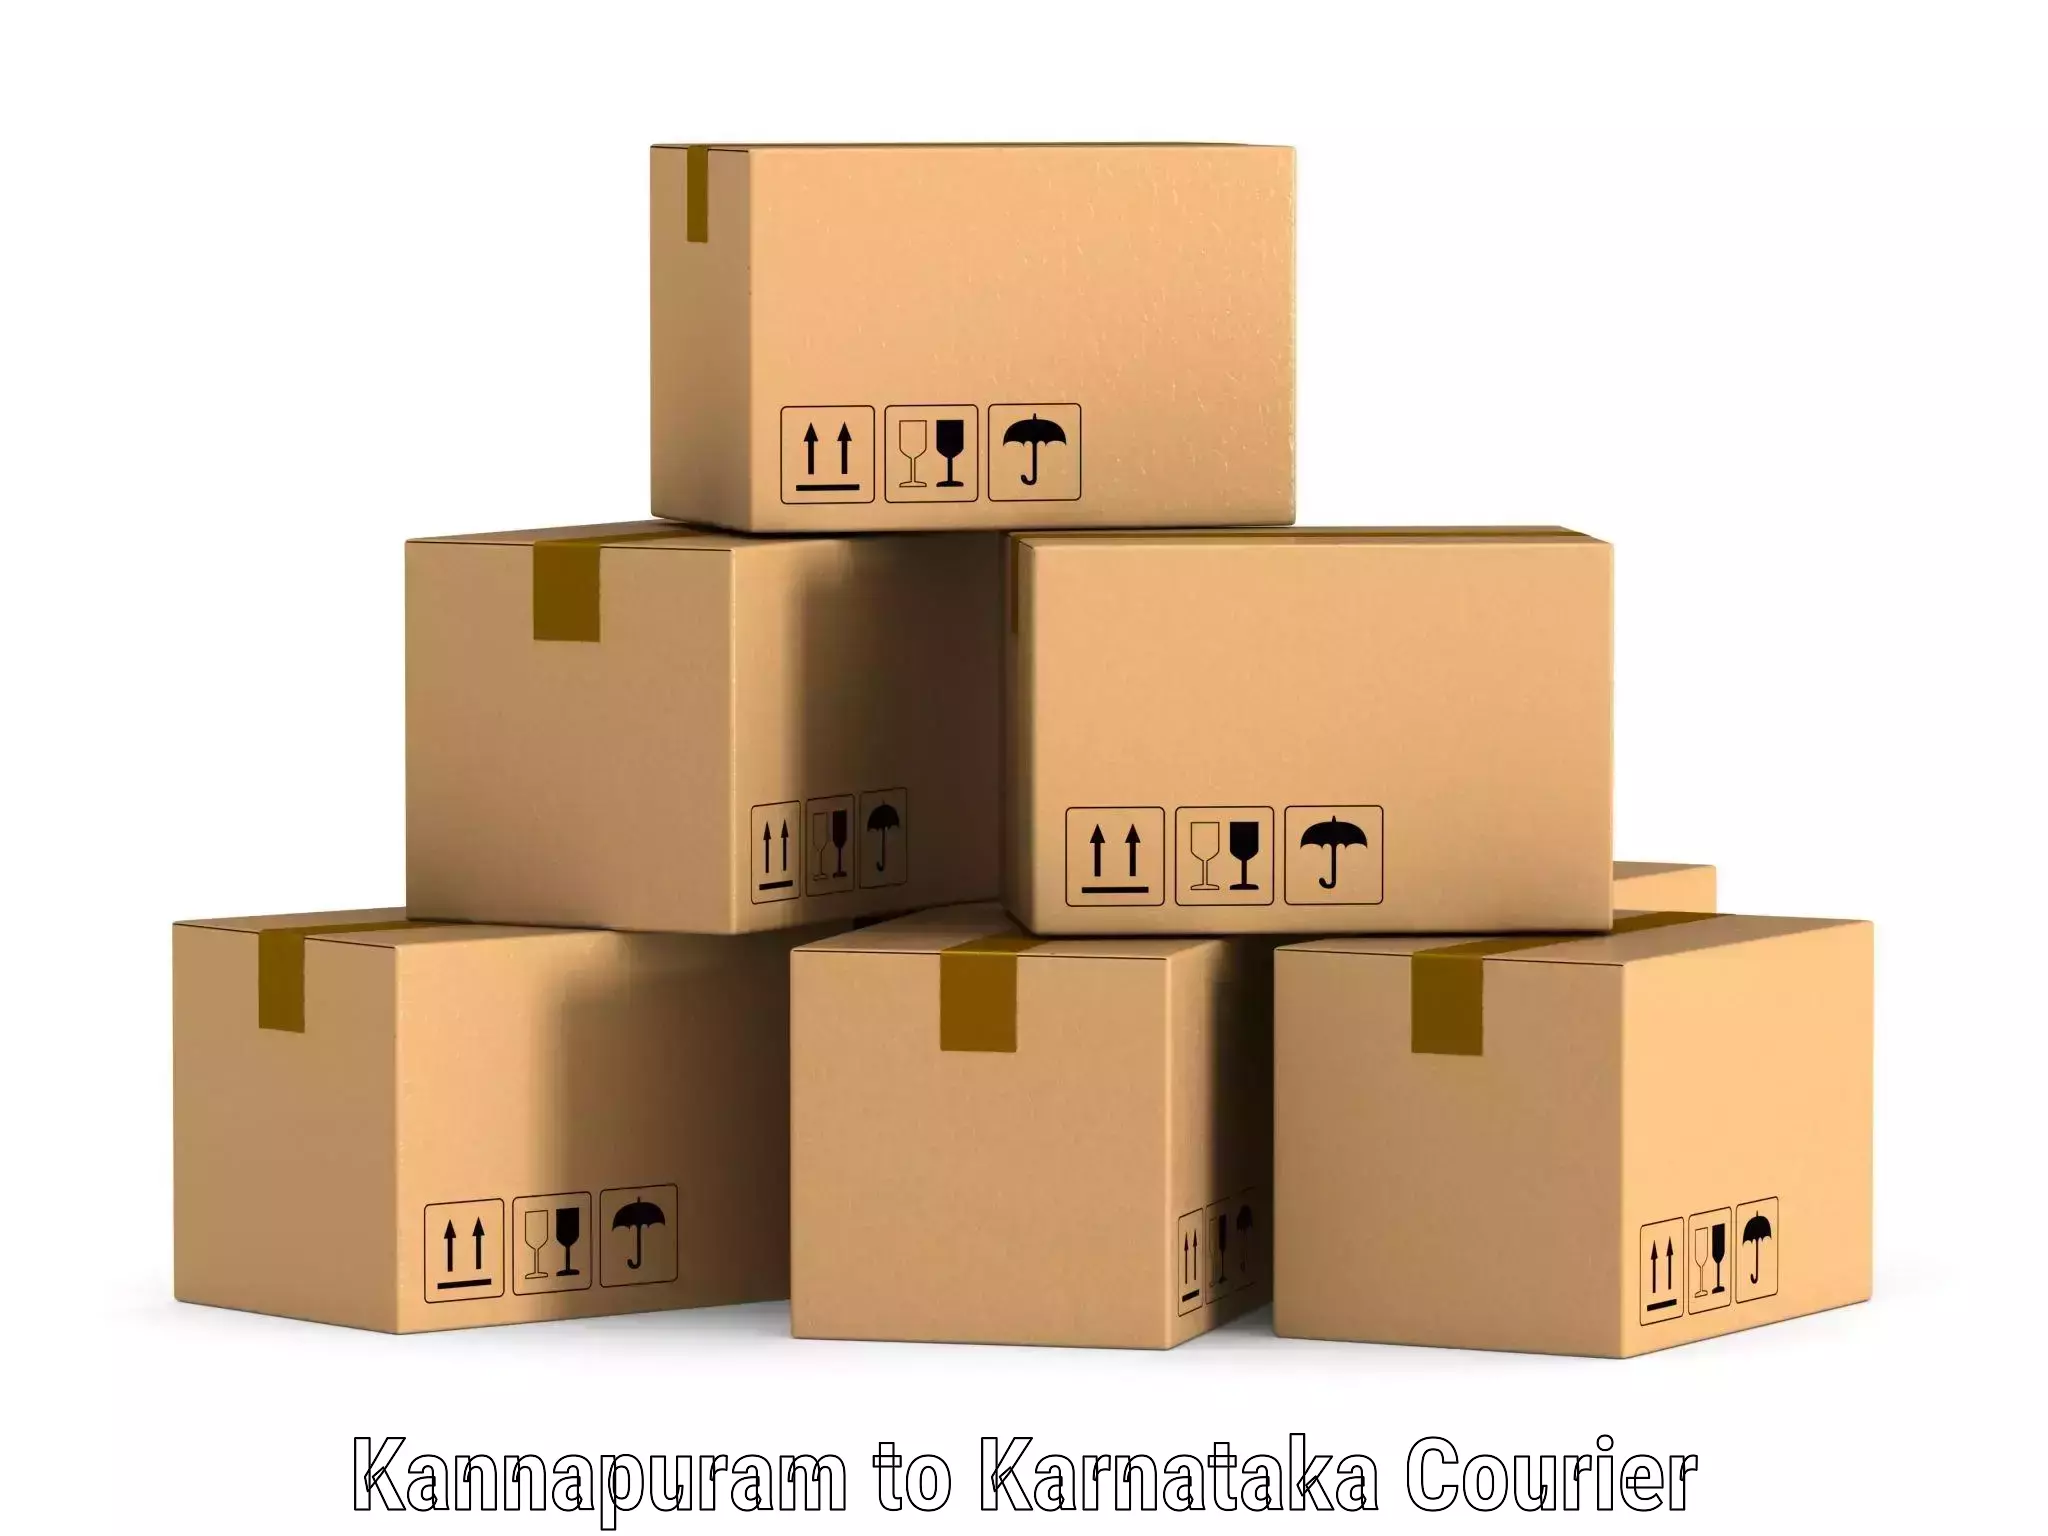 Express package transport Kannapuram to Karnataka